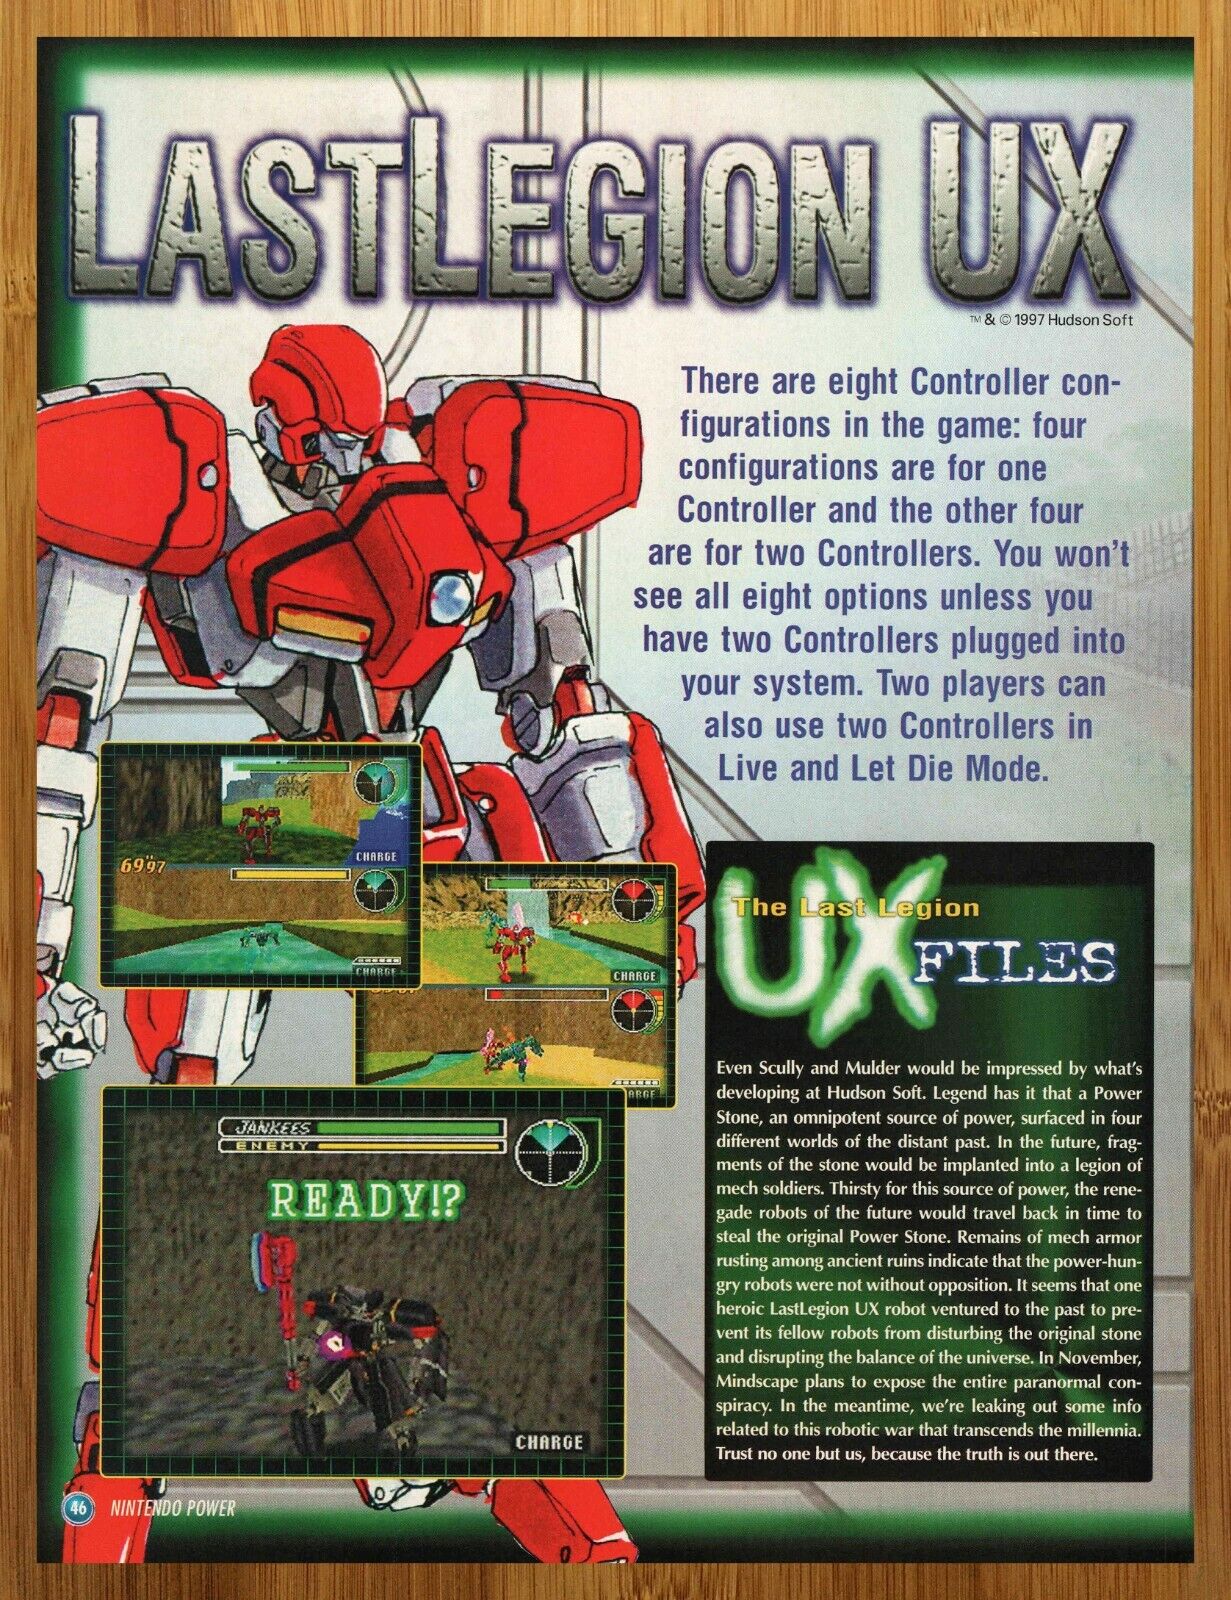 1997 Last Legion UX N64 Print Ad/Poster Authentic Original Video Game Promo Art